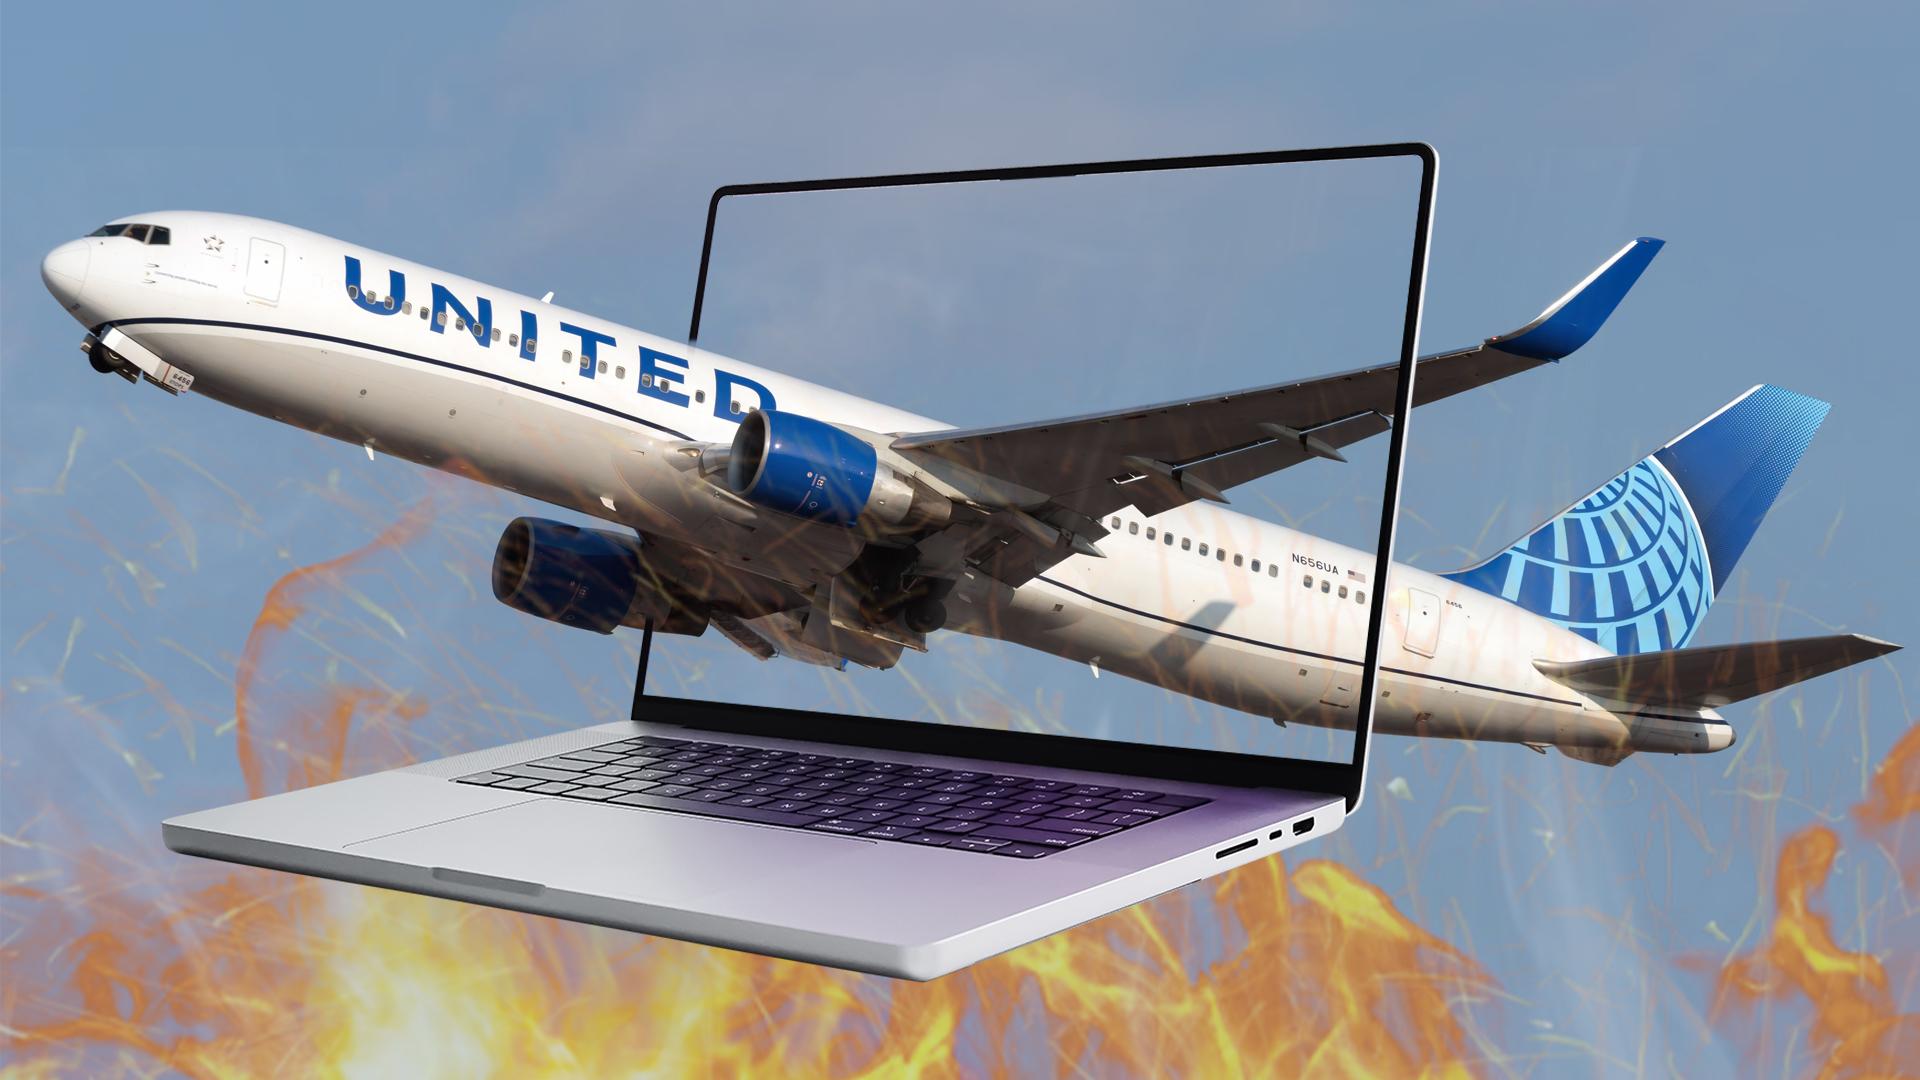 Máy bay hạ cánh khẩn cấp vì một chiếc laptop và hệ quả từ các thiết bị sử dụng pin lithium